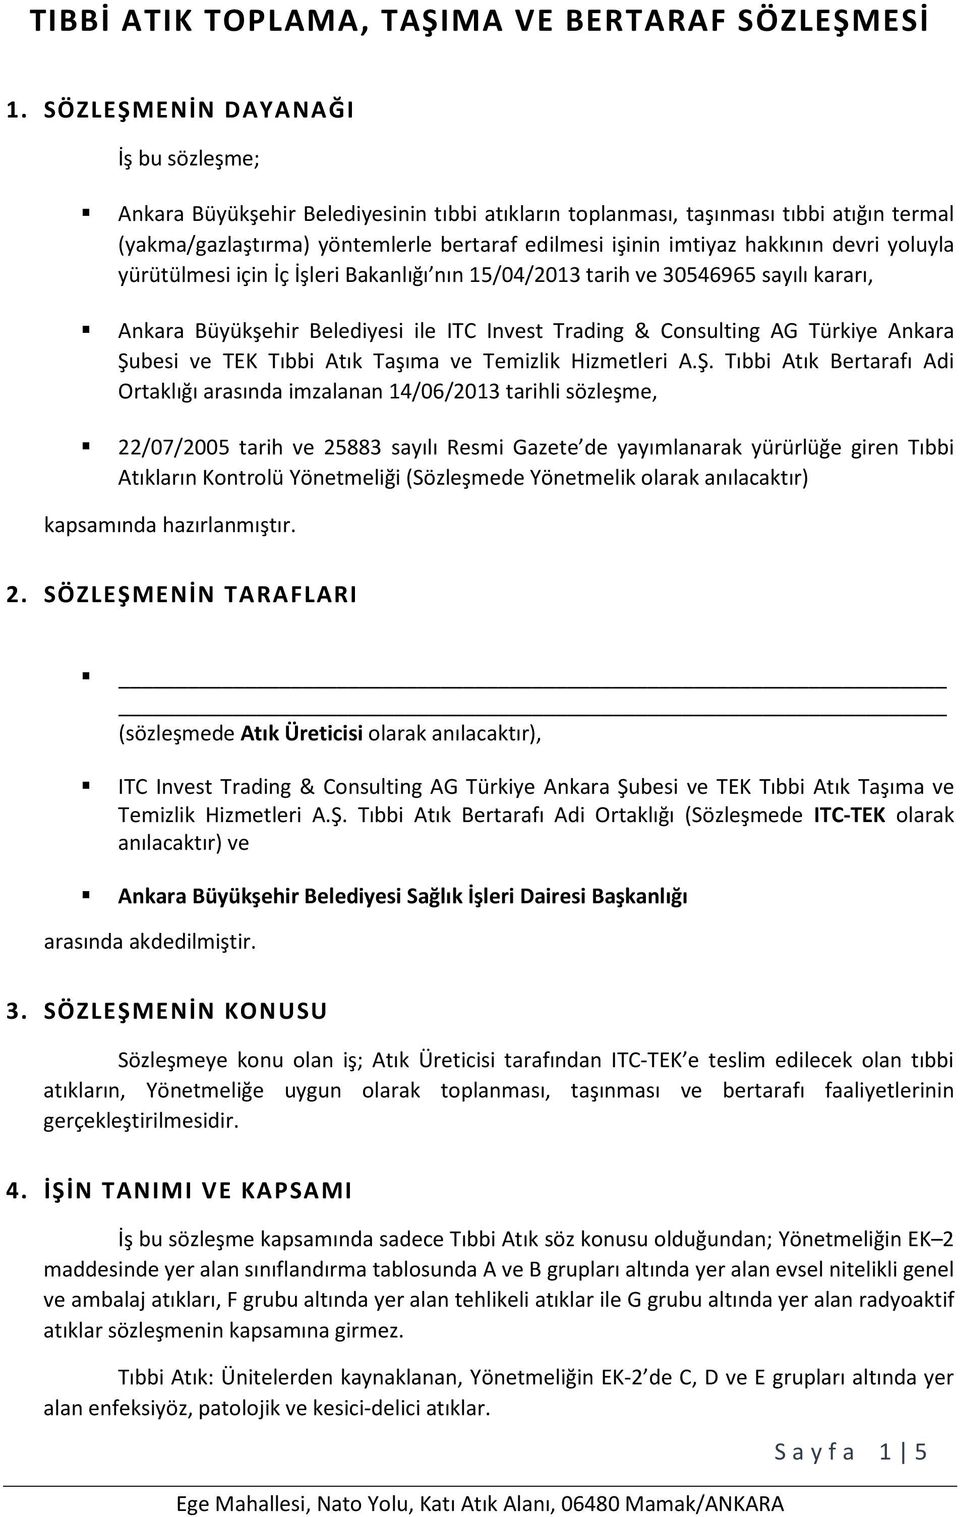 hakkının devri yoluyla yürütülmesi için İç İşleri Bakanlığı nın 15/04/2013 tarih ve 30546965 sayılı kararı, Ankara Büyükşehir Belediyesi ile ITC Invest Trading & Consulting AG Türkiye Ankara Şubesi